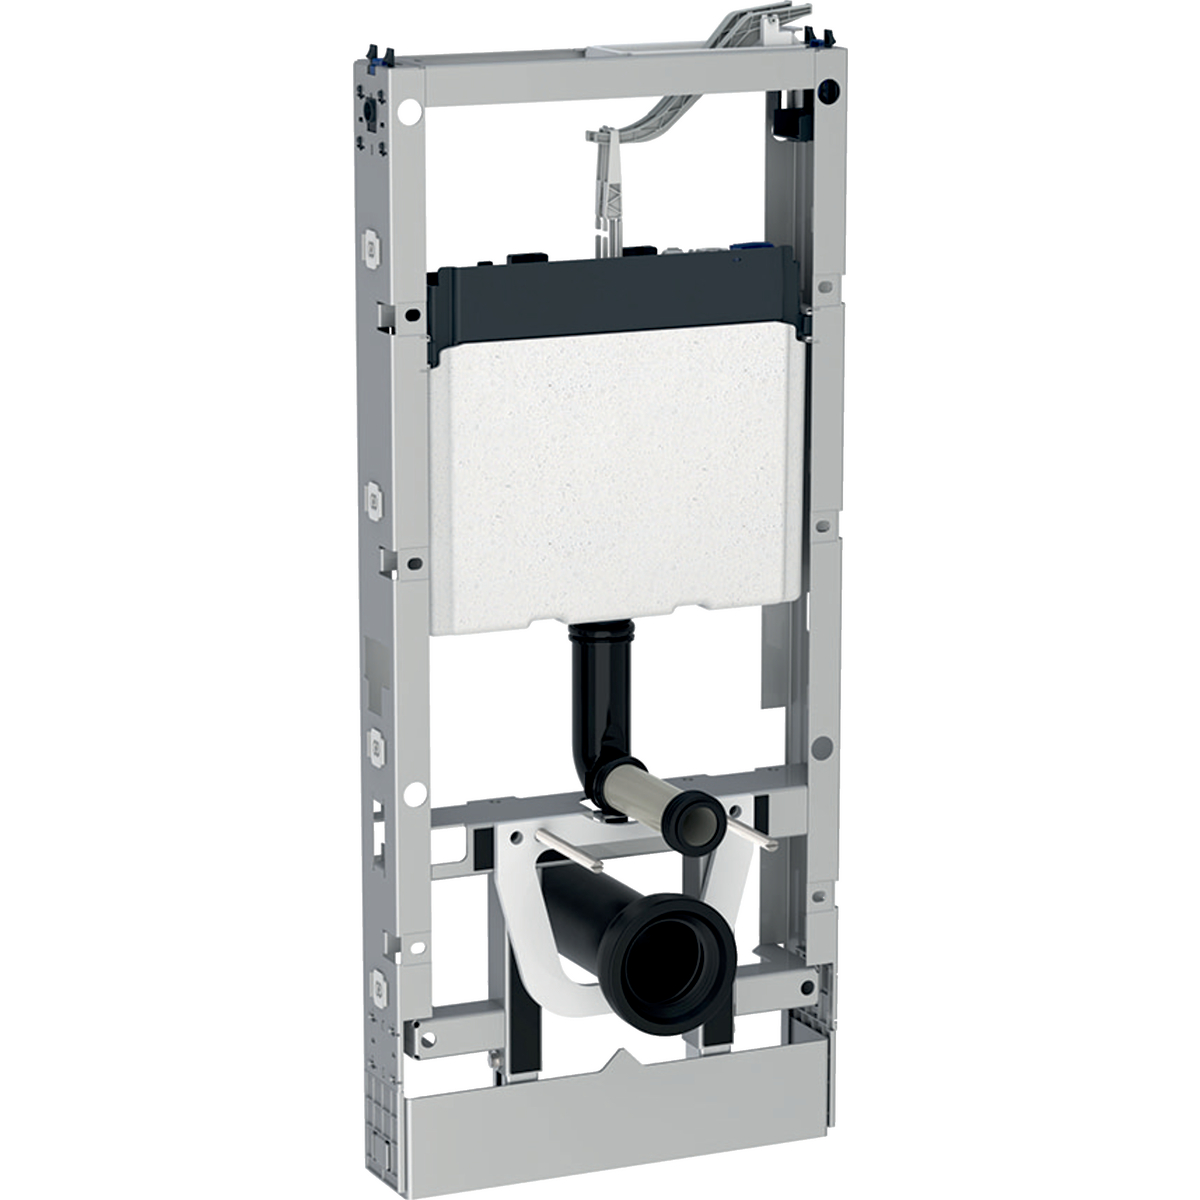 GEBERIT Monolith - Sanitární modul pro závěsné WC, 114 cm, pro individuální úpravu 131.187.00.5